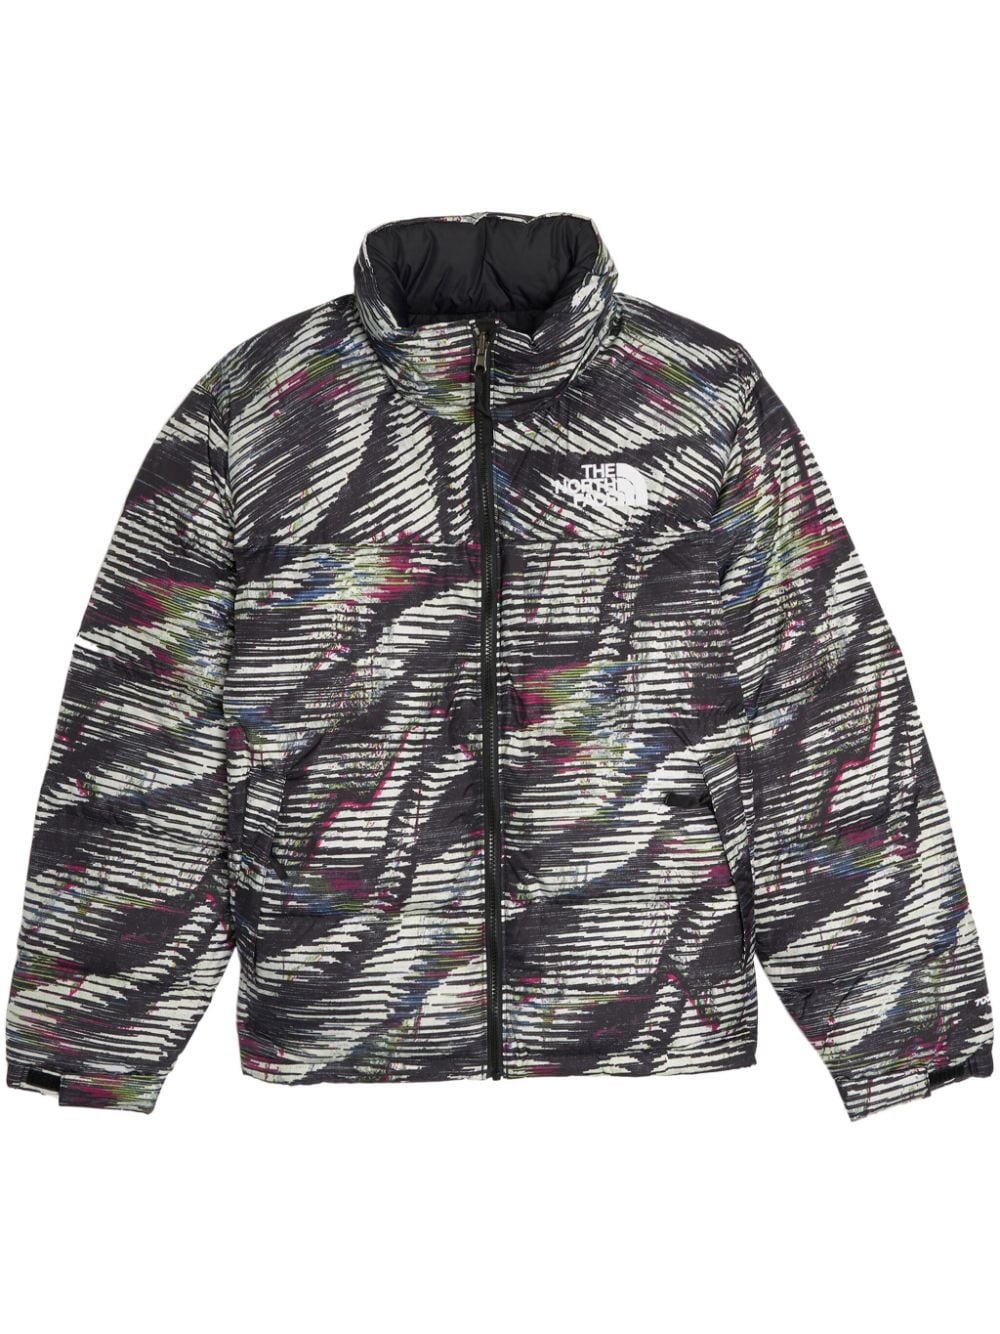 1996 Retro Nuptse jacket - 1